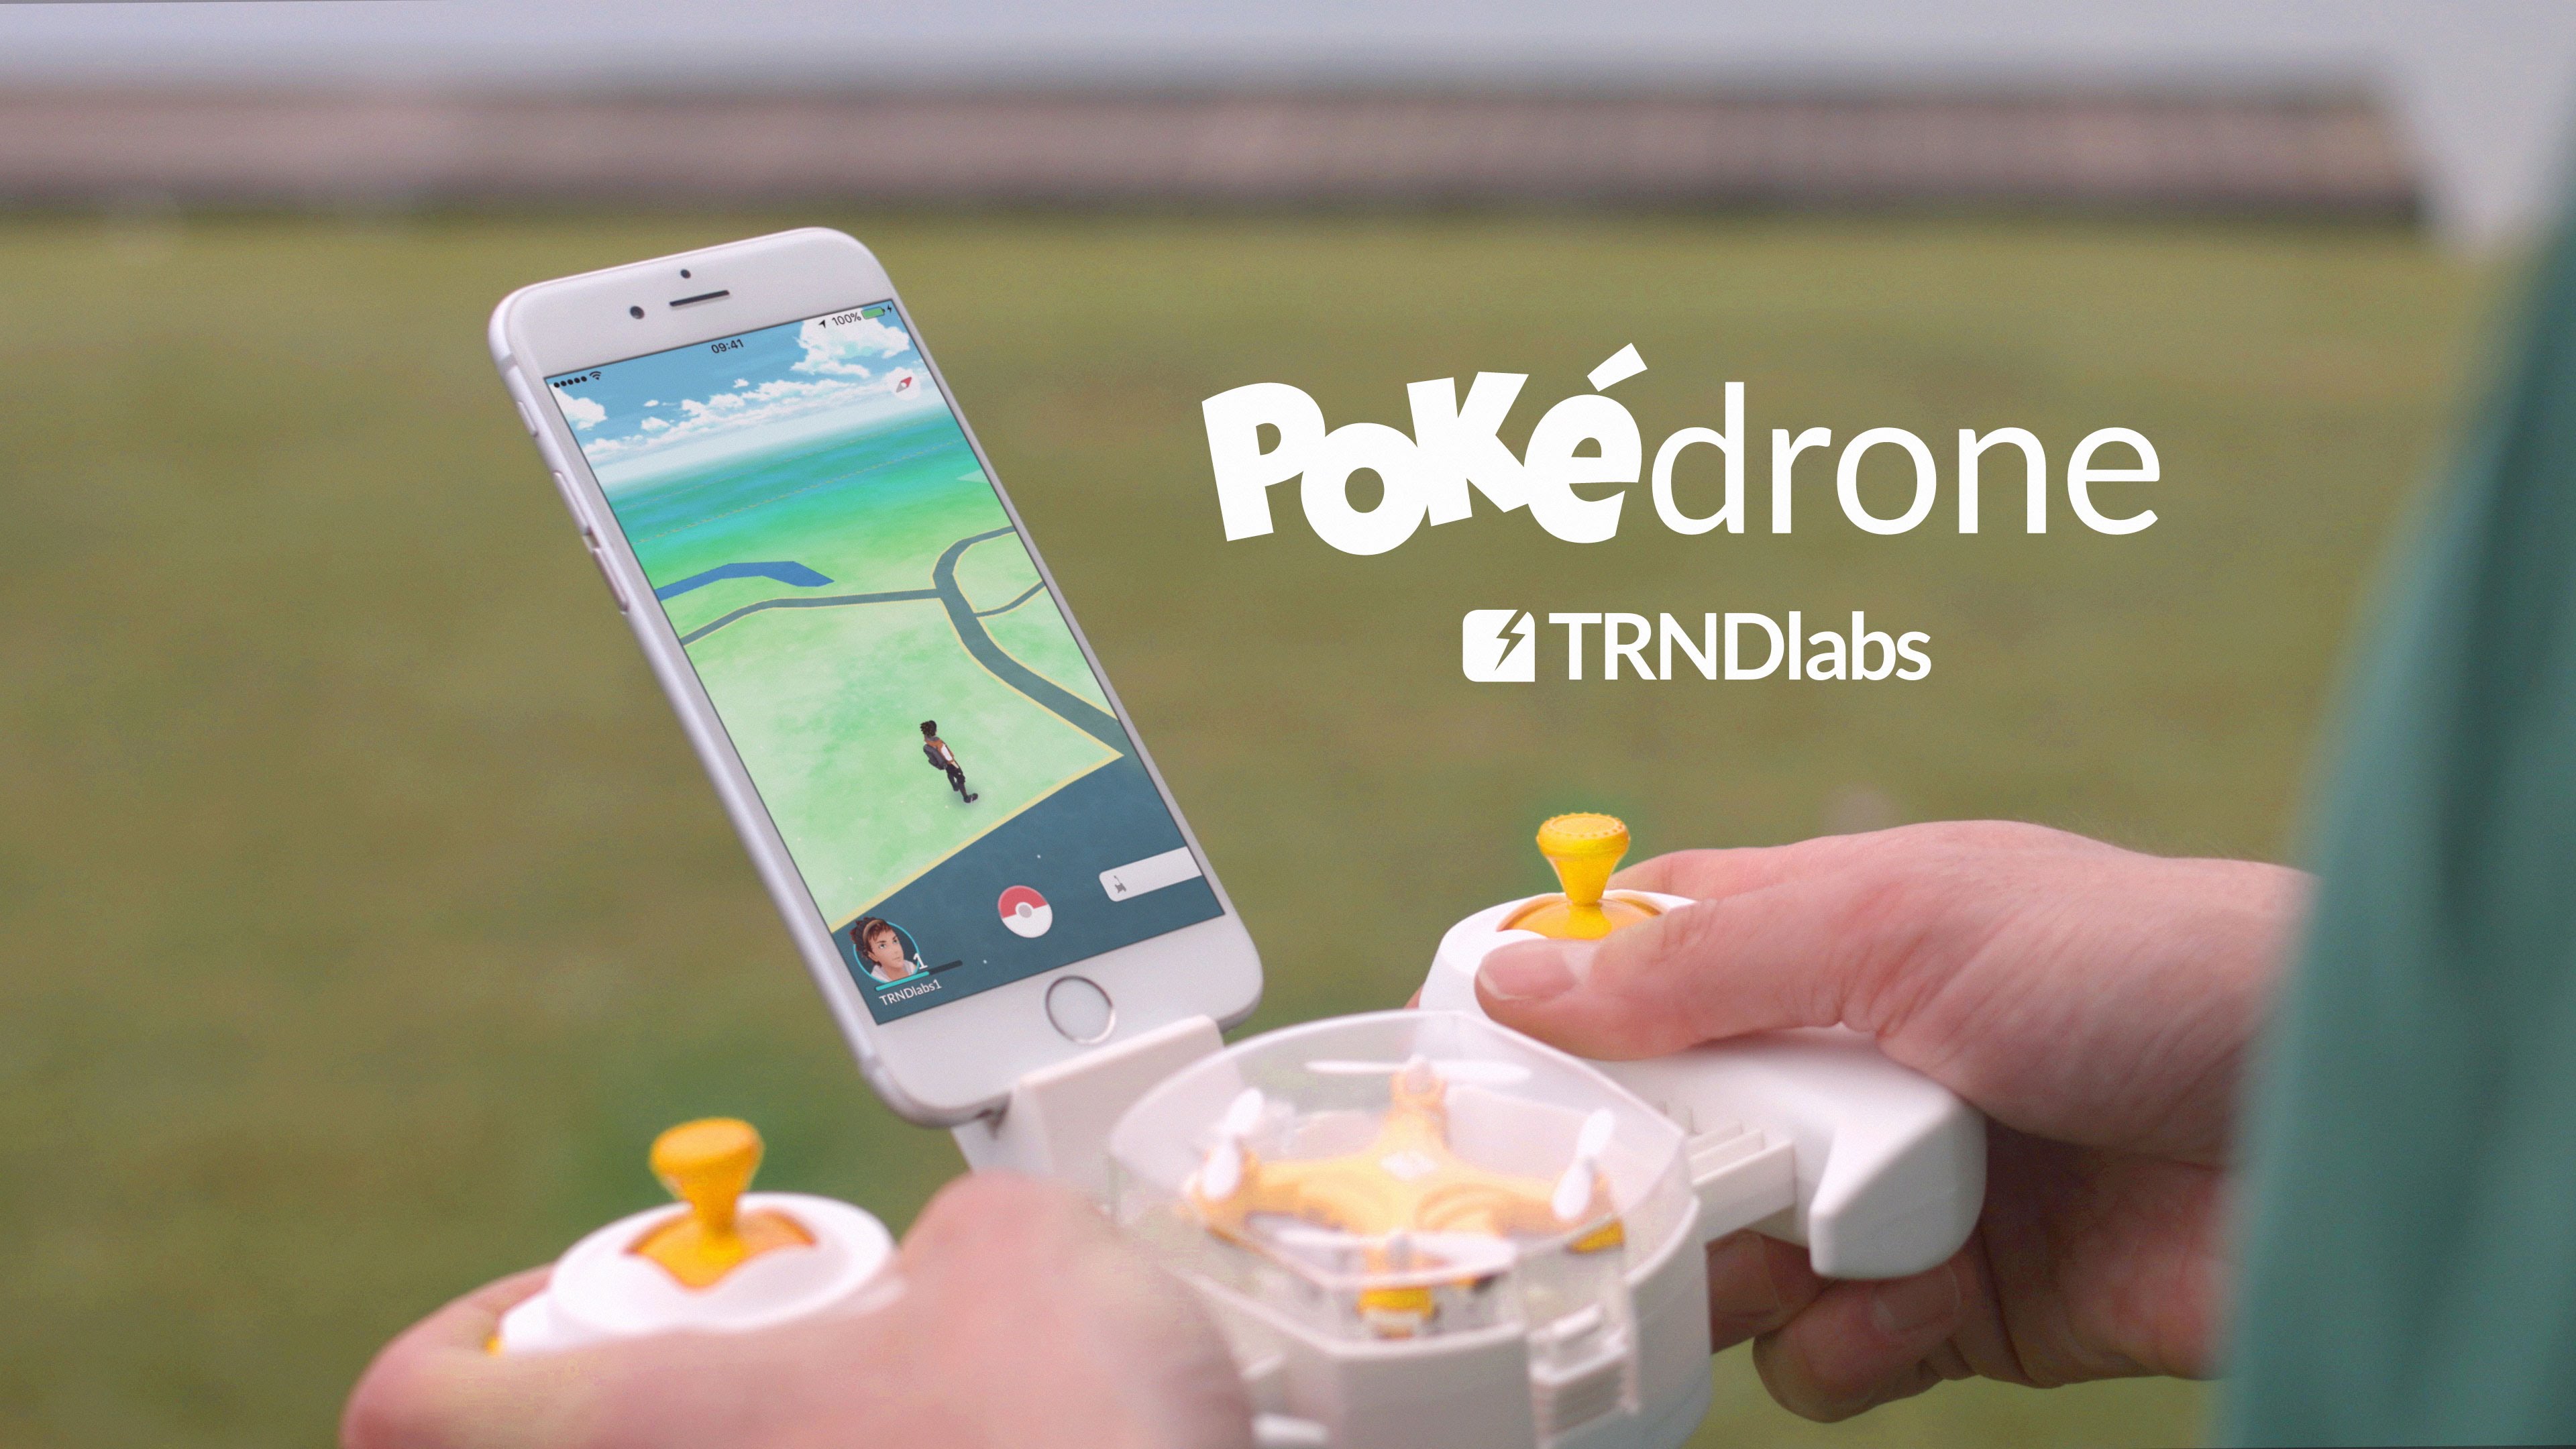 ¡La locura continúa! Han creado un dron en miniatura para jugar Pokemon Go